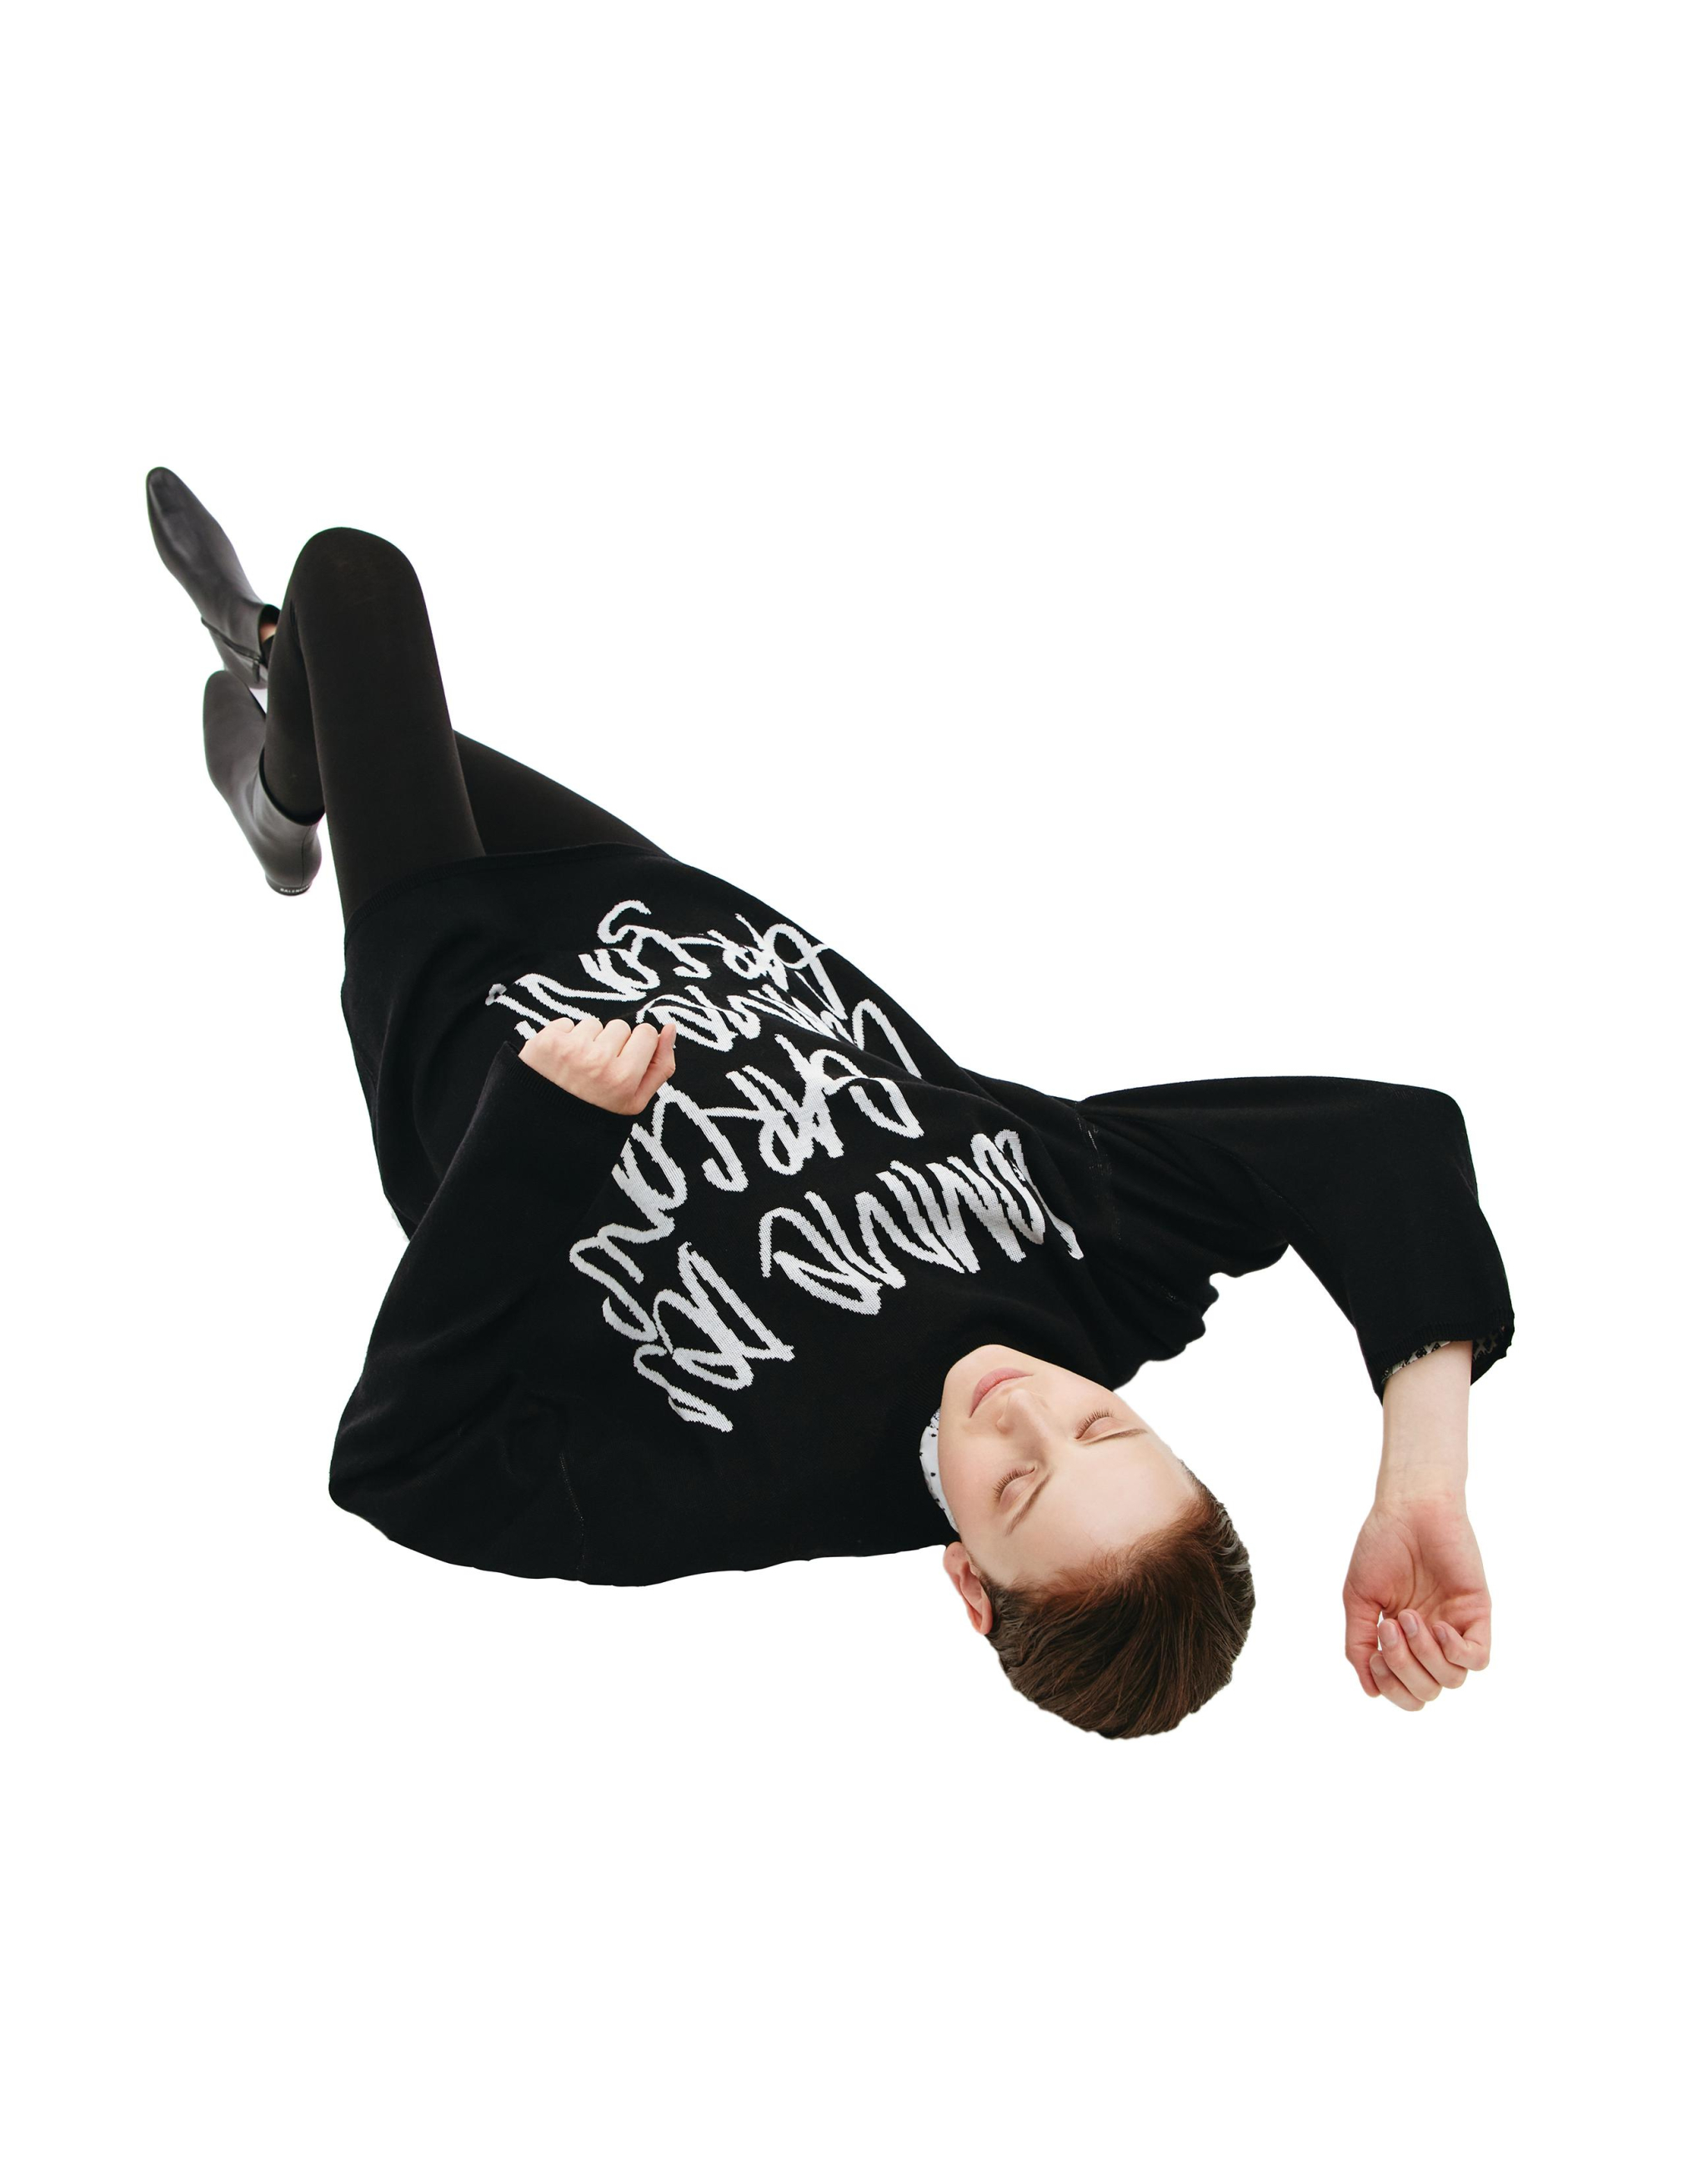 Шерстяной свитер с контрастным логотипом Comme des Garcons GI-N017-051-1, размер S;M - фото 4